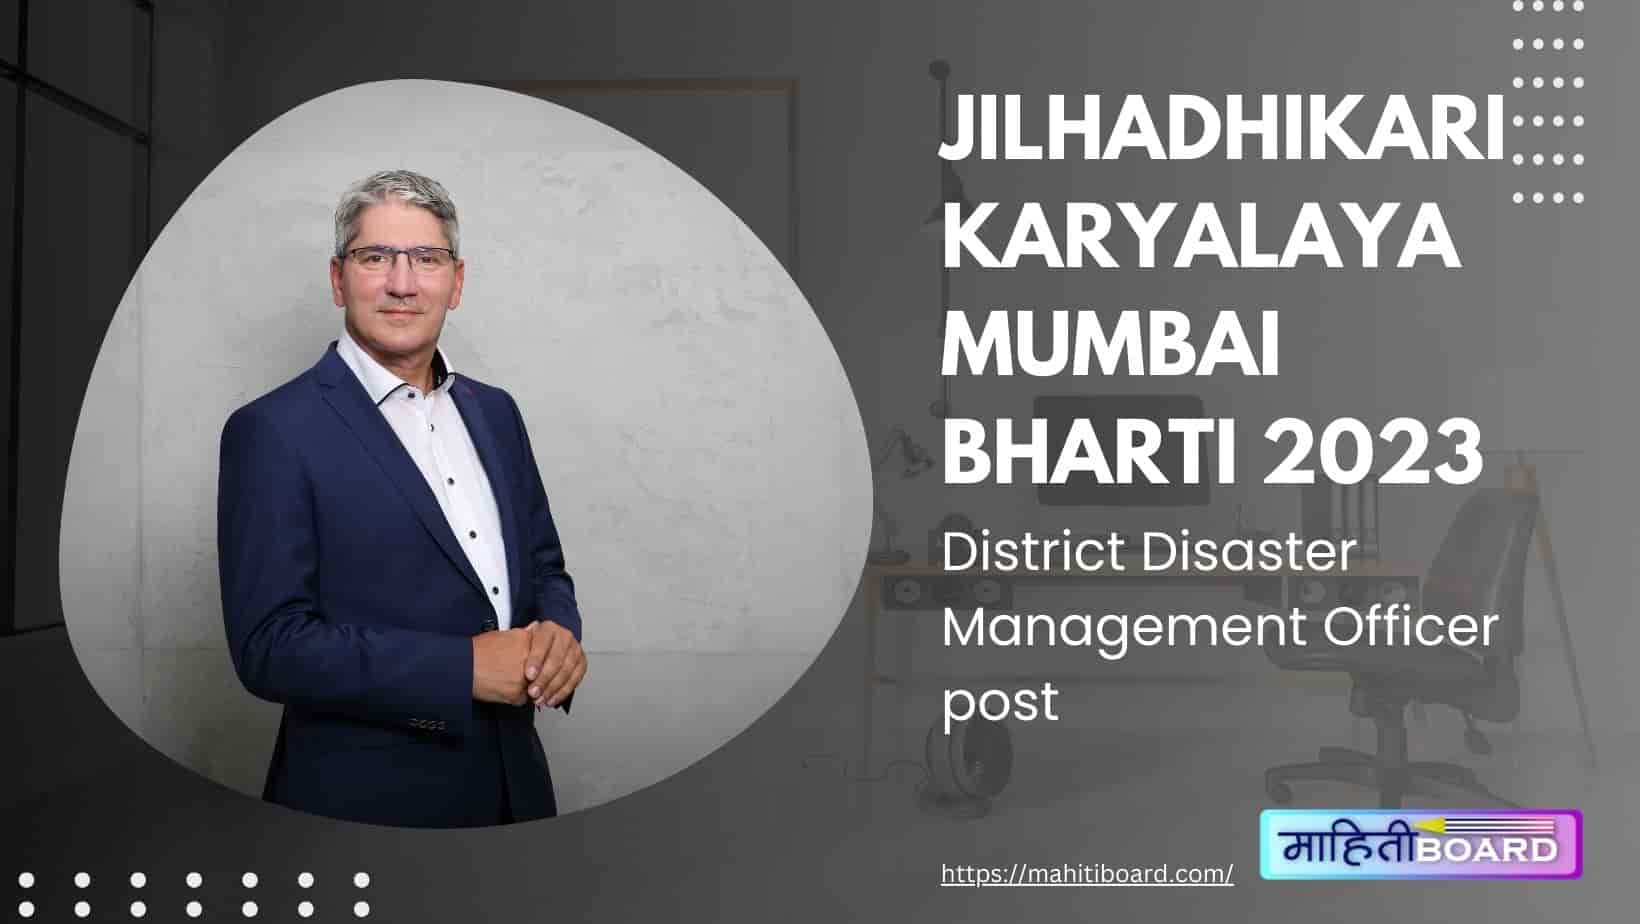 Jilhadhikari Karyalaya Mumbai Bharti 2023